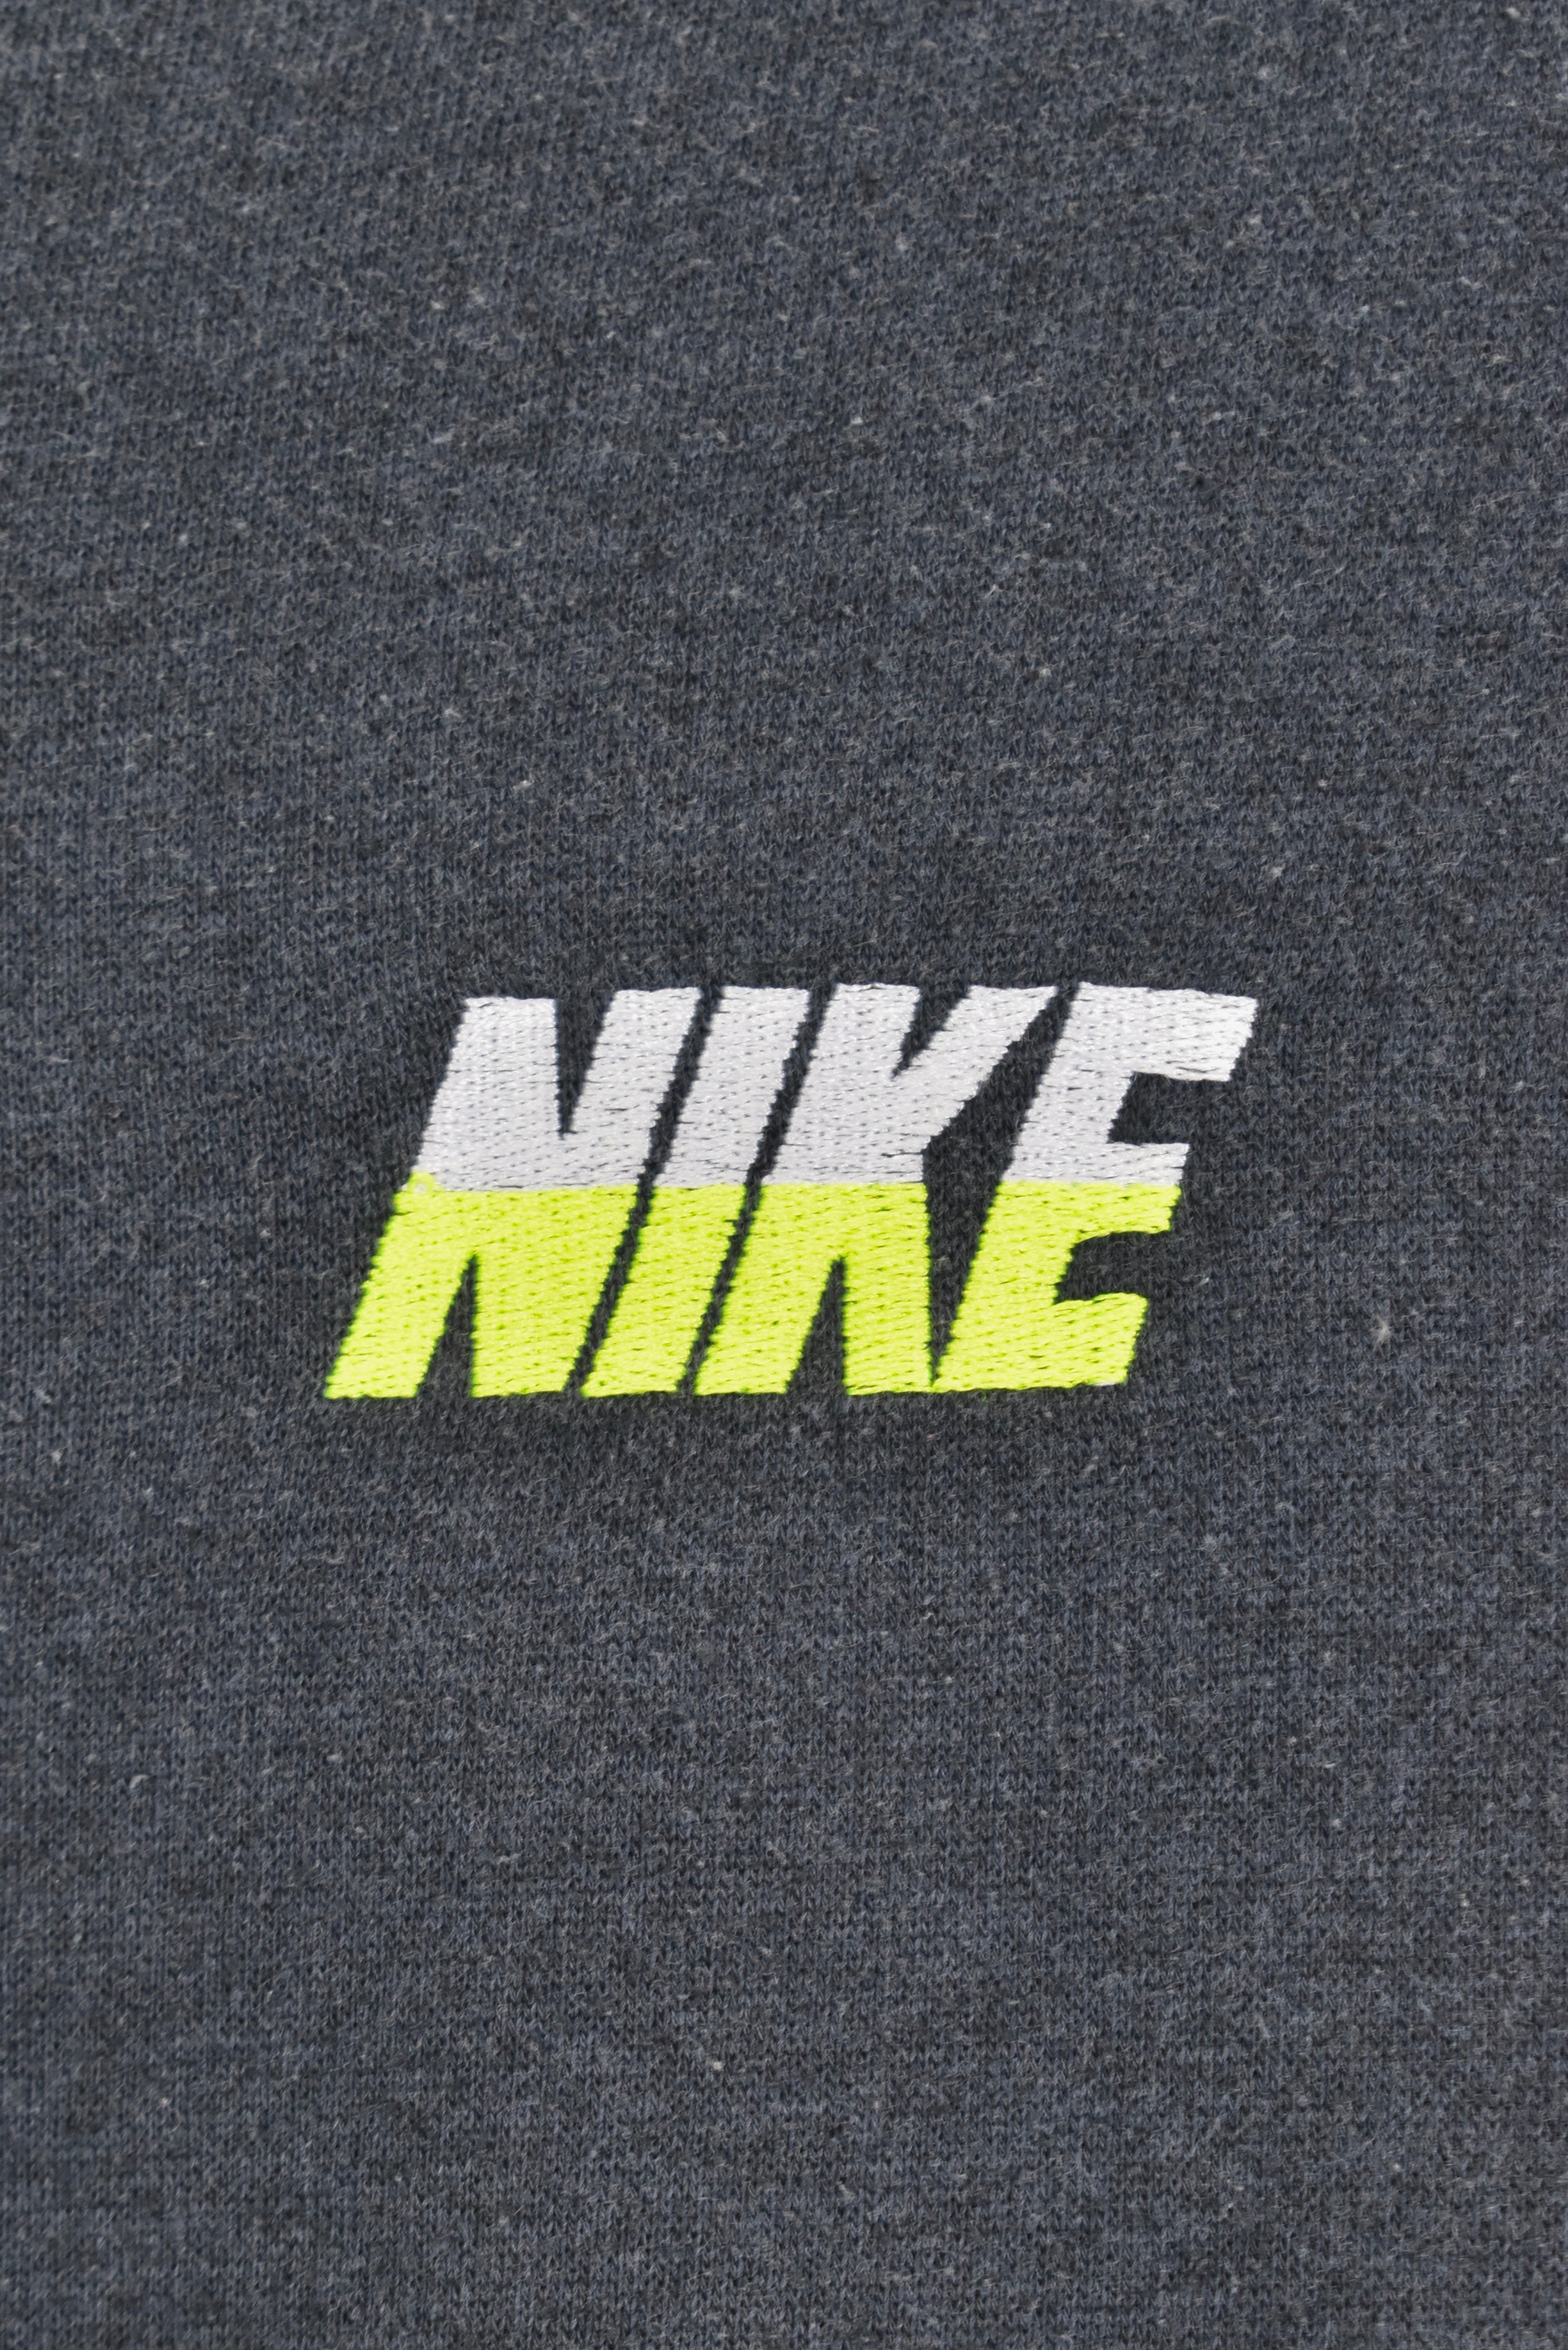 Vintage Nike embroidered black sweatshirt | Small NIKE